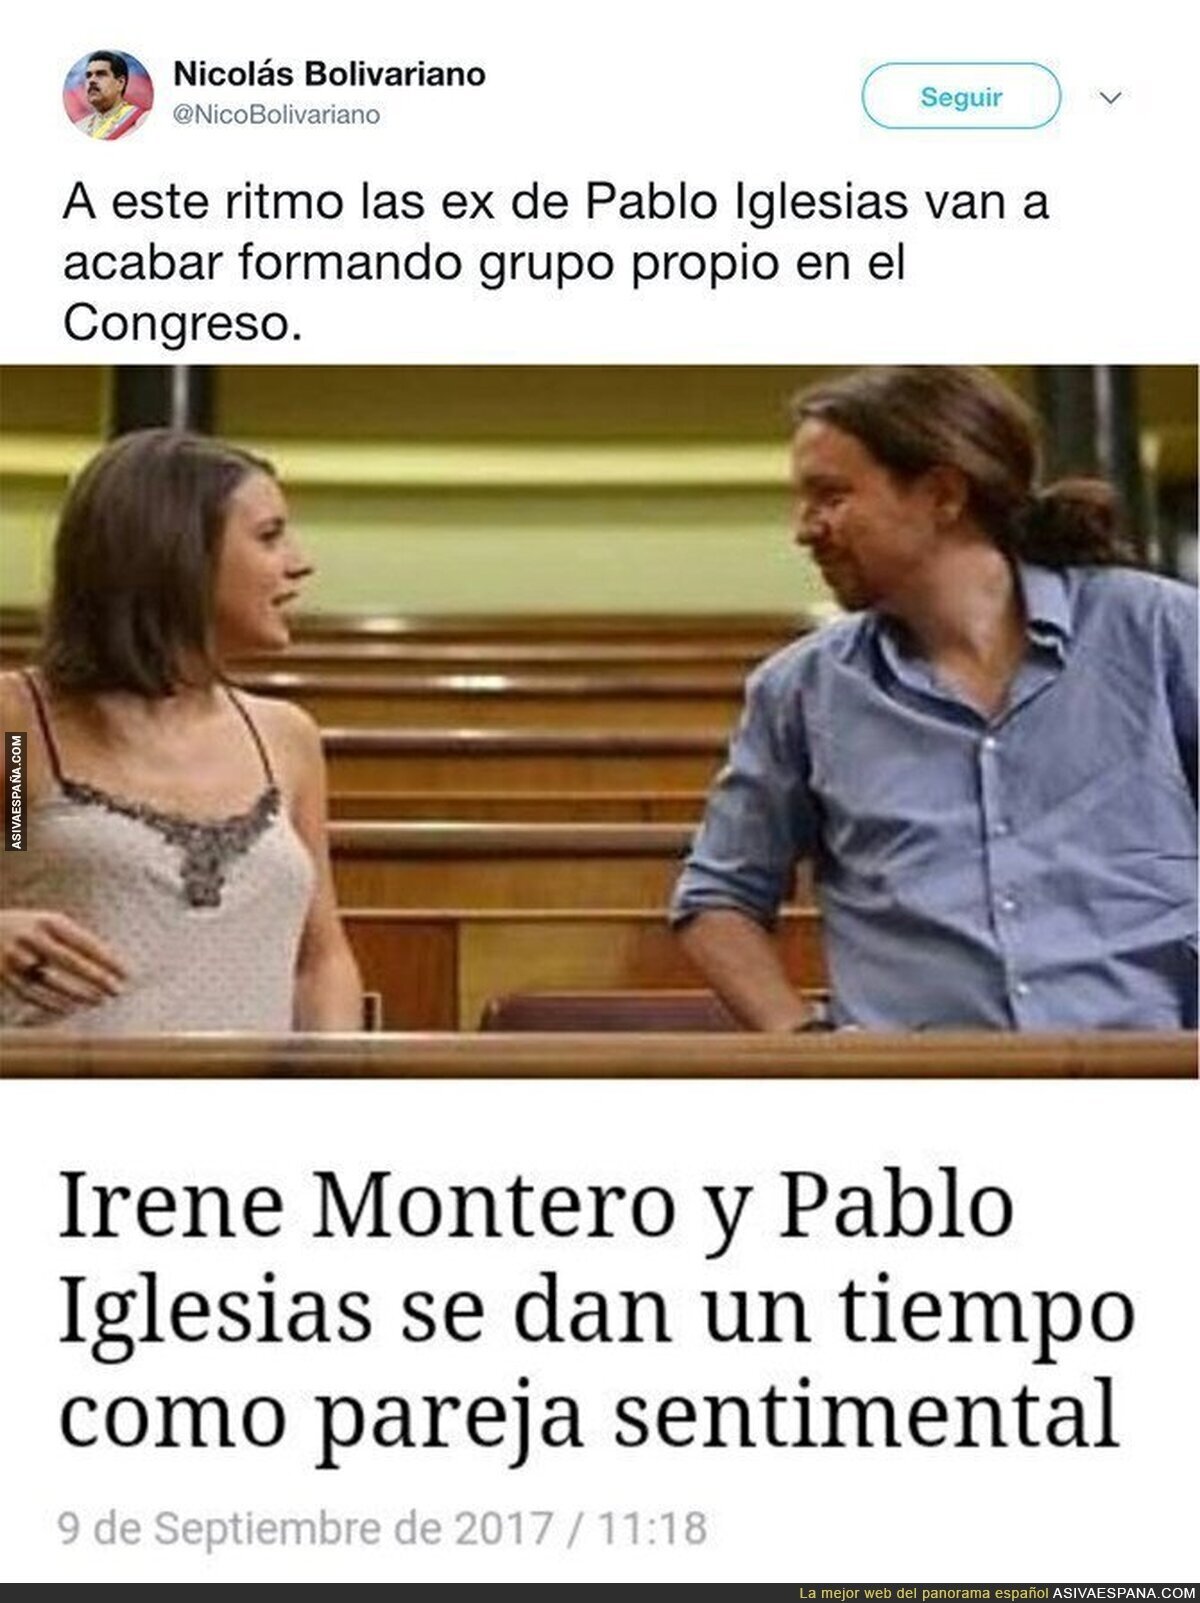 ¡Pablo Iglesias e Irene Montero han roto!